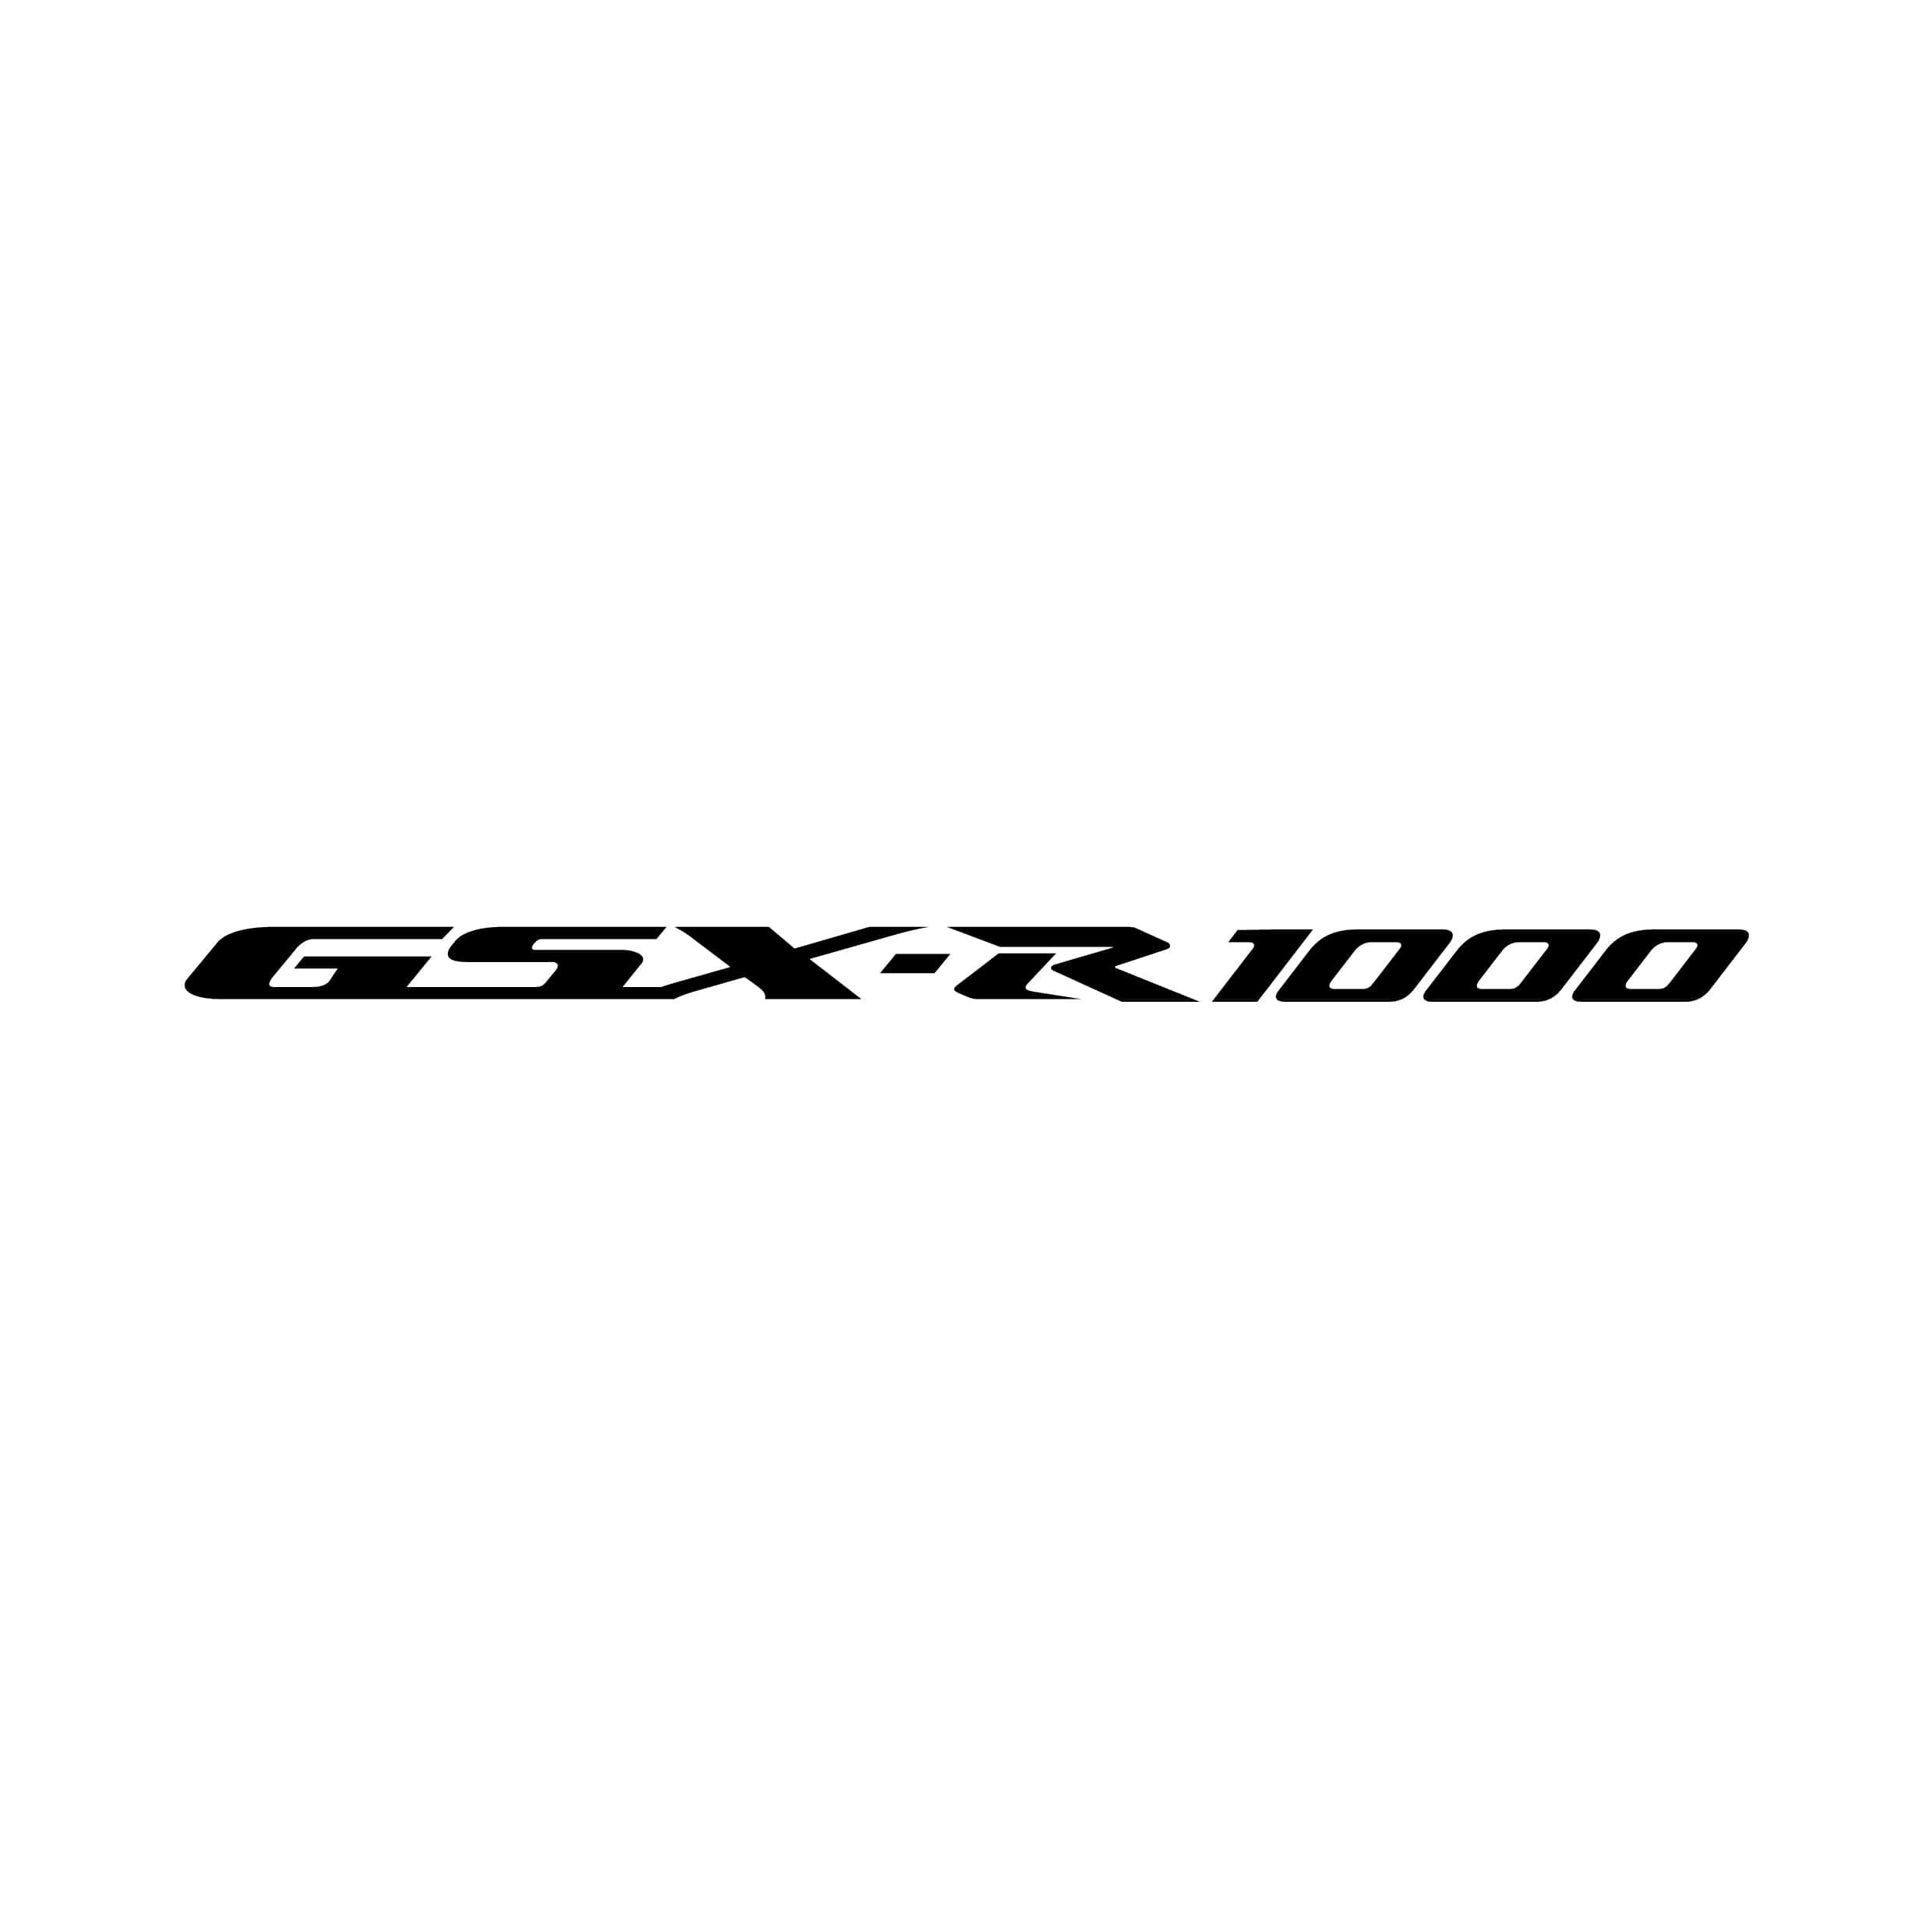 stickers-gsxr-1000-suzuki-ref54-autocollant-moto-sticker-deux-roue-autocollants-decals-sponsors-tuning-sport-logo-bike-scooter-min